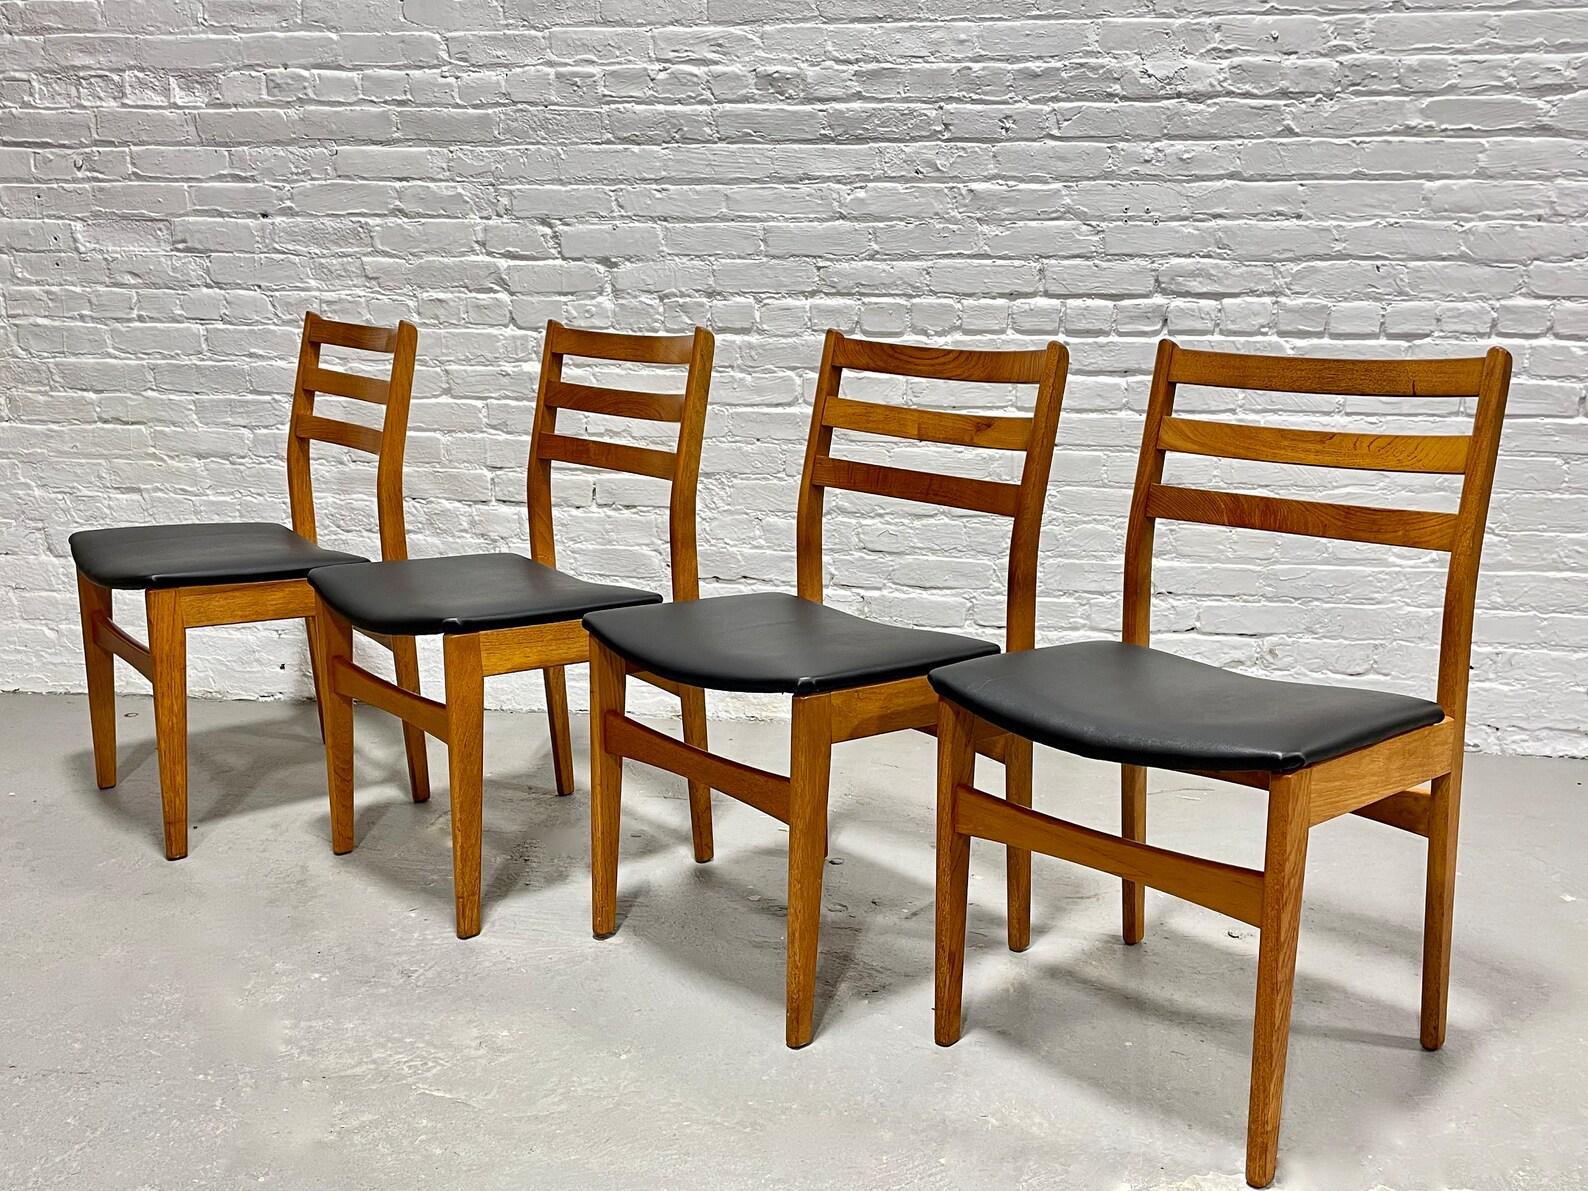 Mid Century Modern Teak Esszimmerstühle von Nordic Furniture, hergestellt in Kanada, ca. 1960.  Die Gestelle sind mit äußerst bequemen Rückenlehnen aus massivem Teakholz ausgestattet. Die Stühle wurden neu mit schwarzem Naugahyde gepolstert, das gut